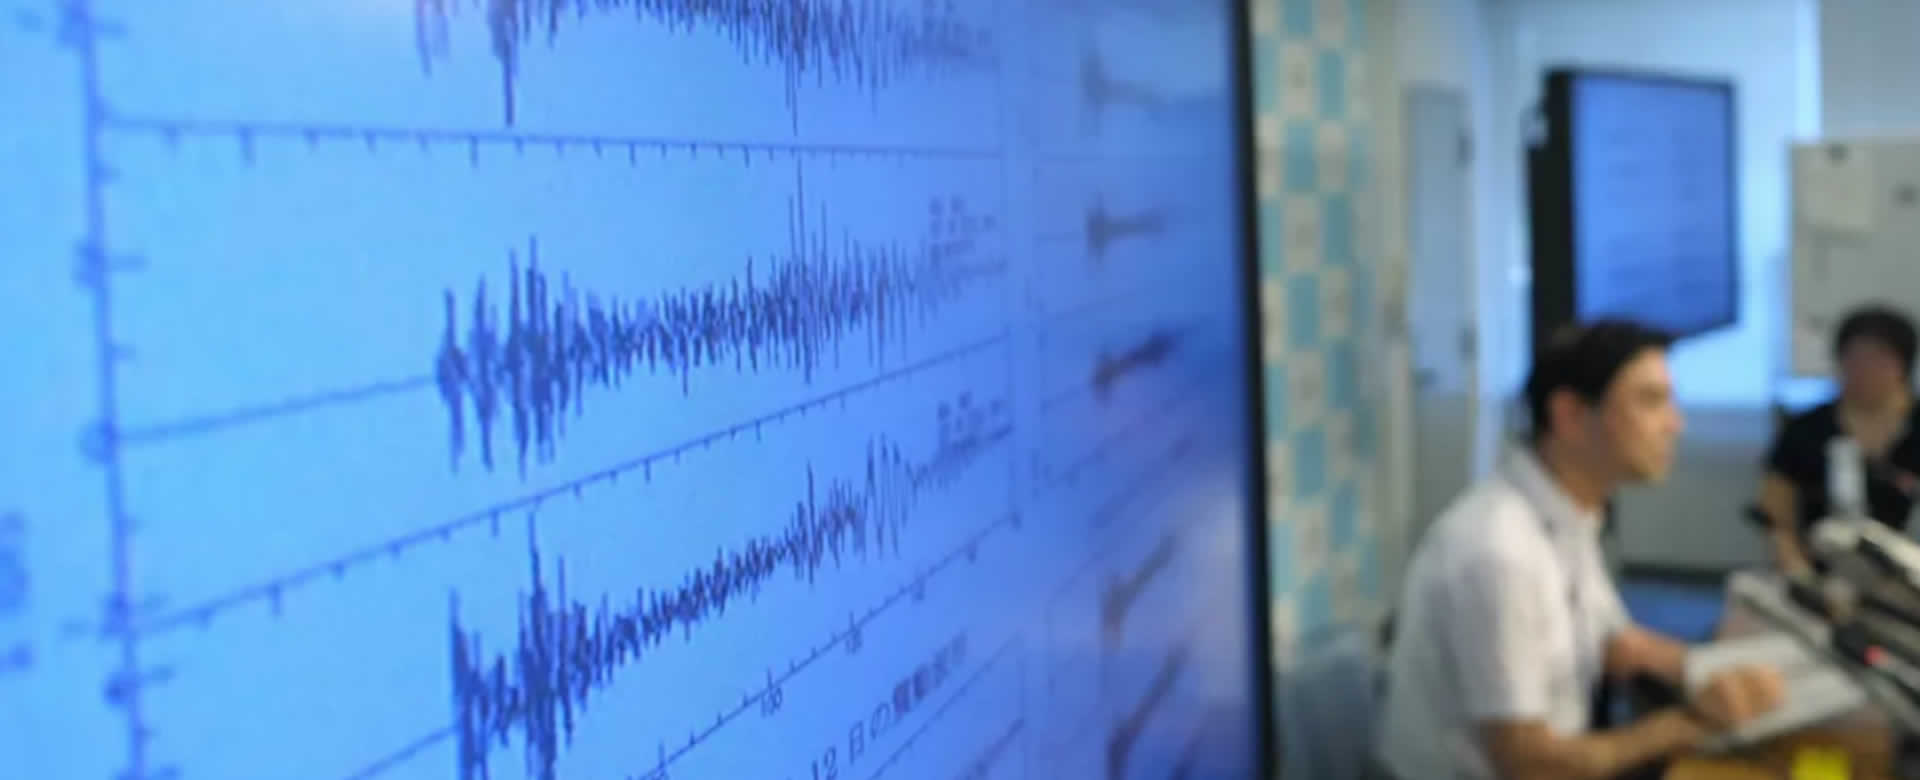 Reportan sismo de magnitud 5.9 en Perú, sin daños ocasionados